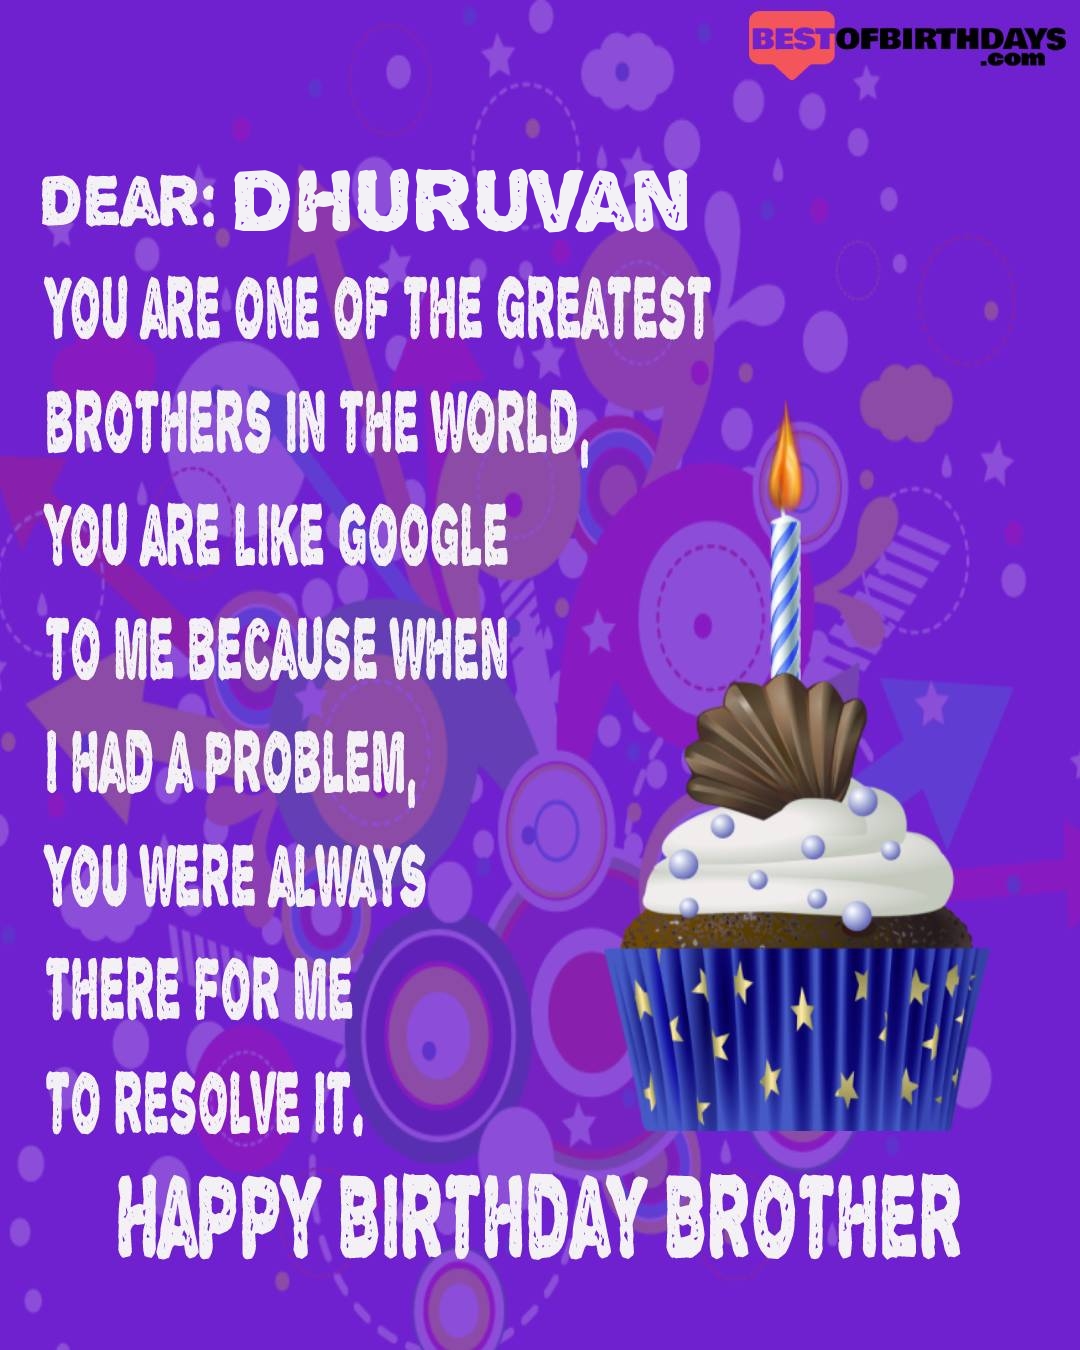 Happy birthday dhuruvan bhai brother bro